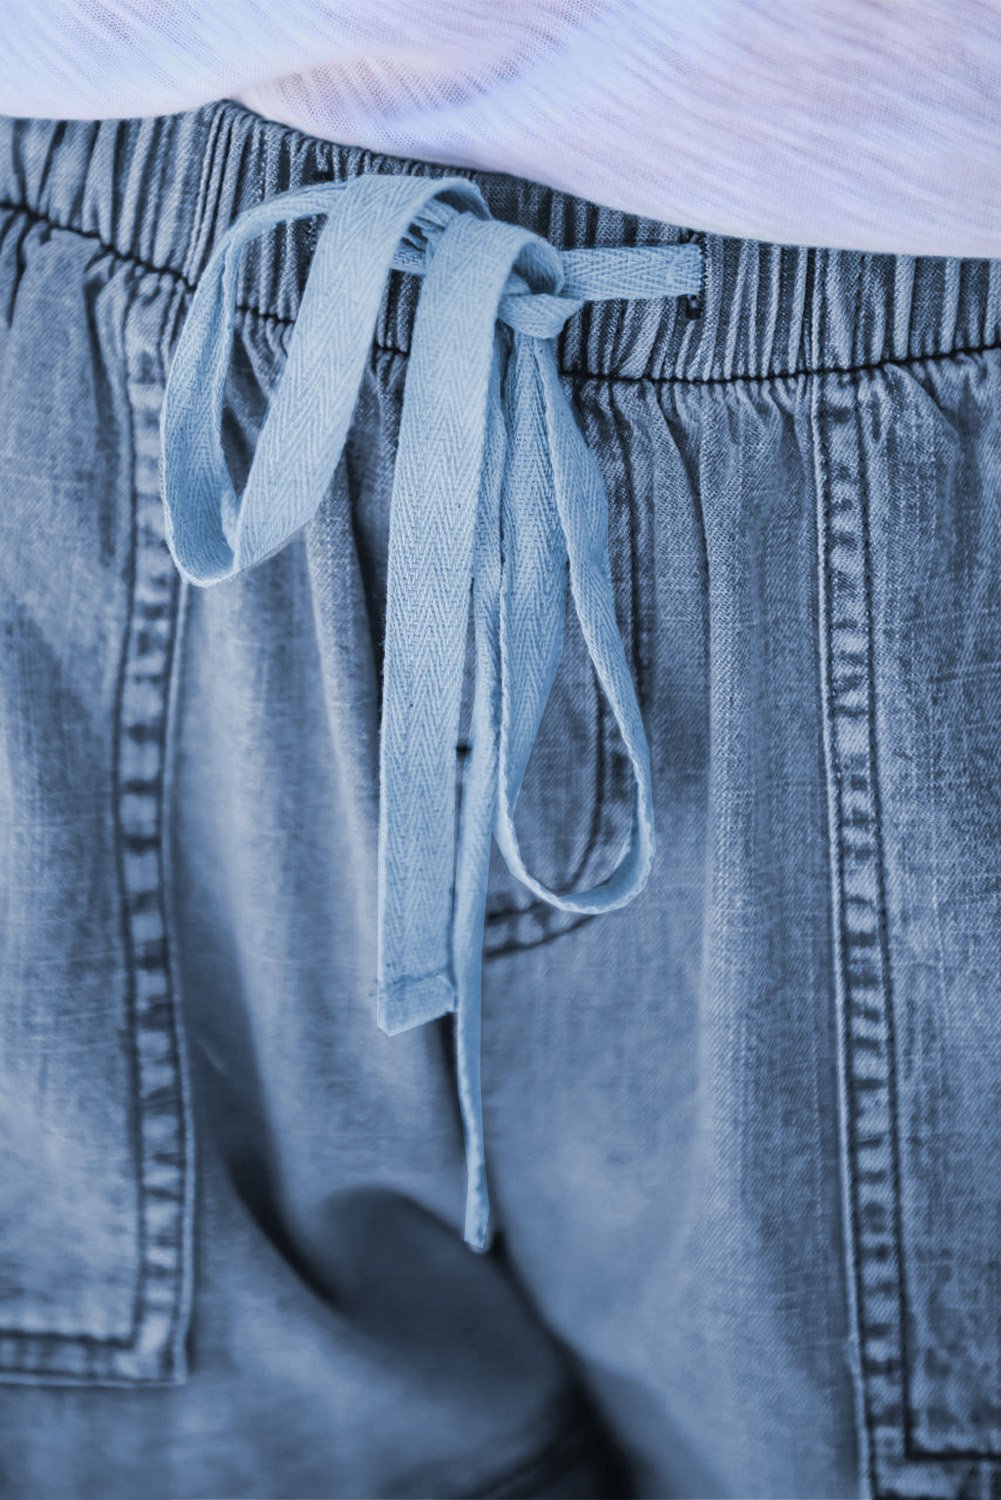 Short Jeans Bleu Femme Effiloche a Poches Decontracte Ete